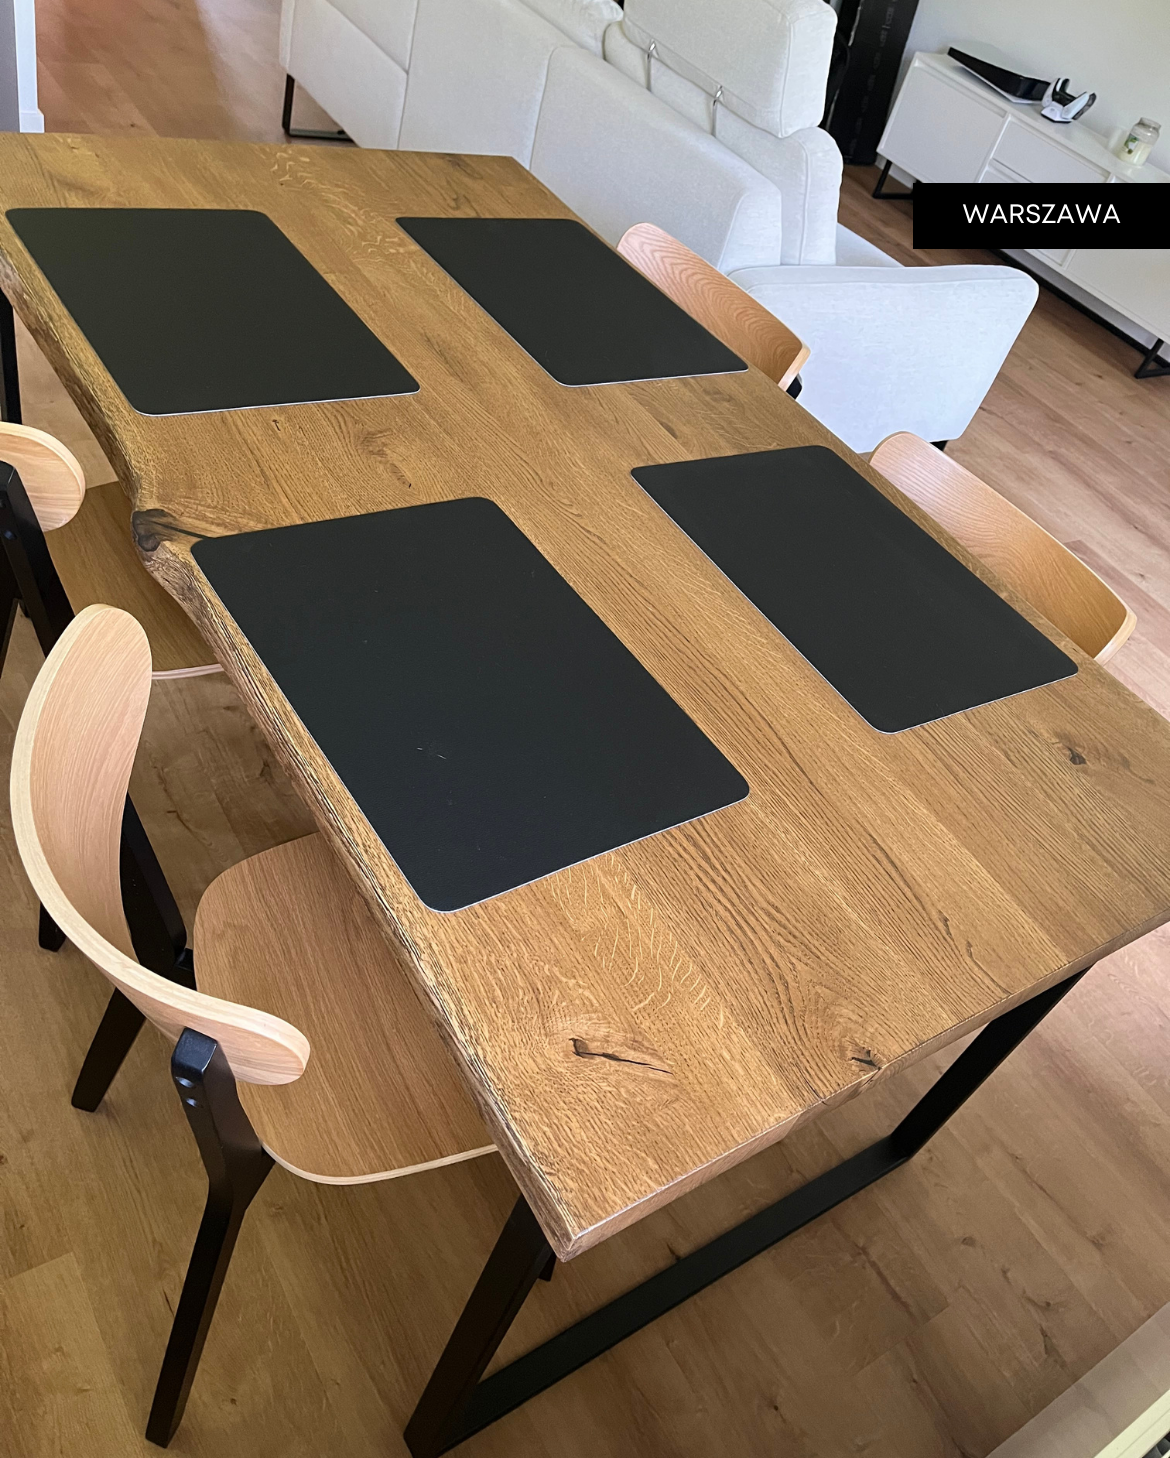 "stół dębowy SLIMO - meble drewniane na wymiar - loftowe, industrialne, skandynawskie”